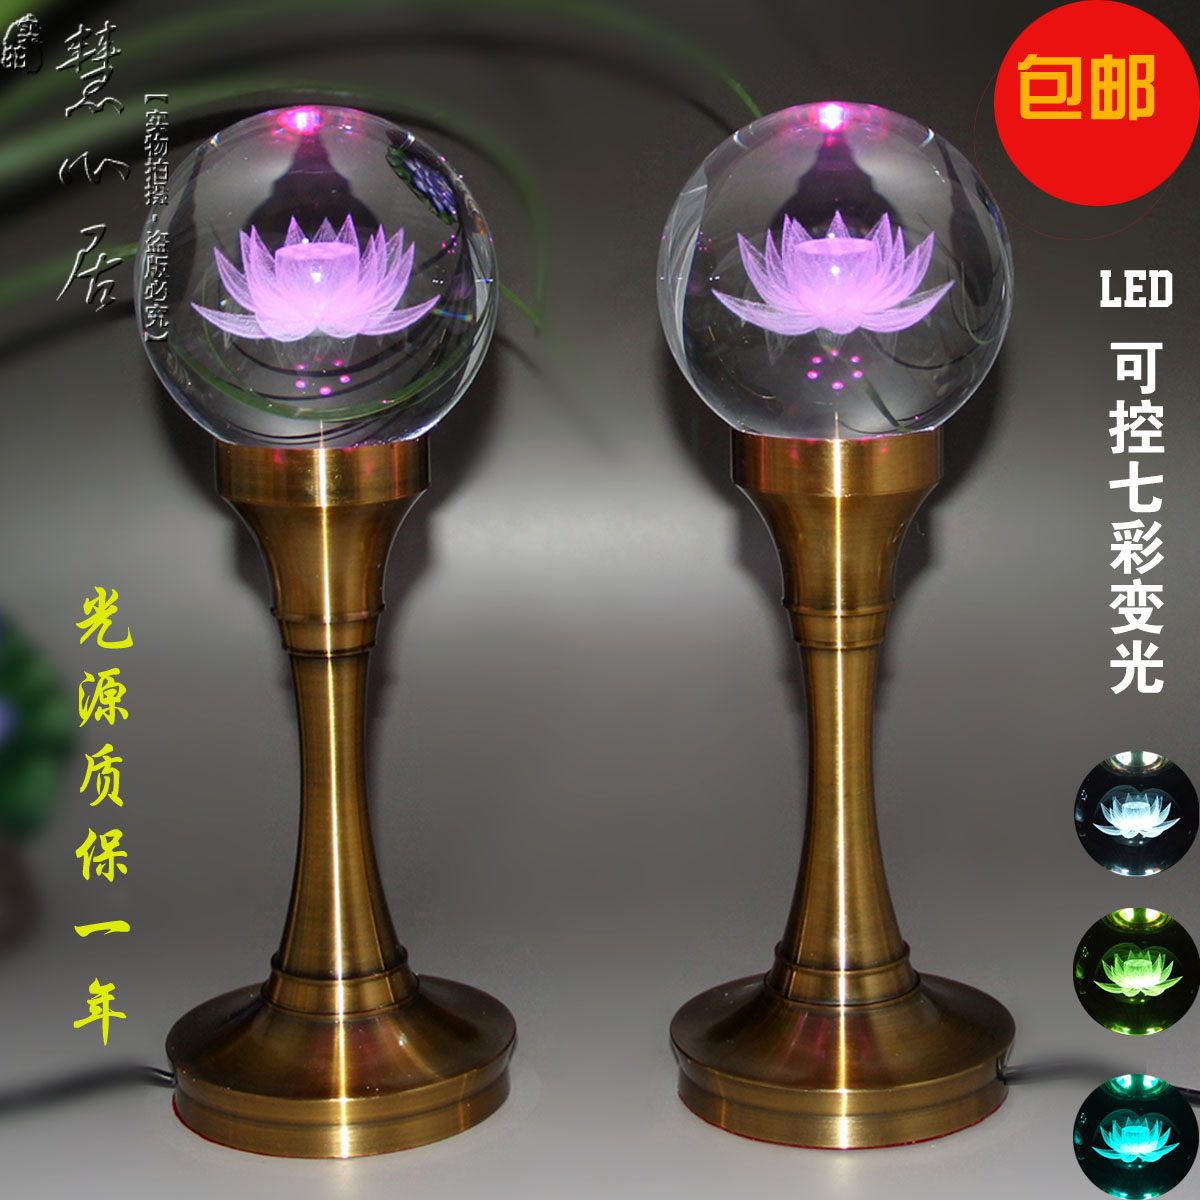 led蓮花燈 - 花燈2021